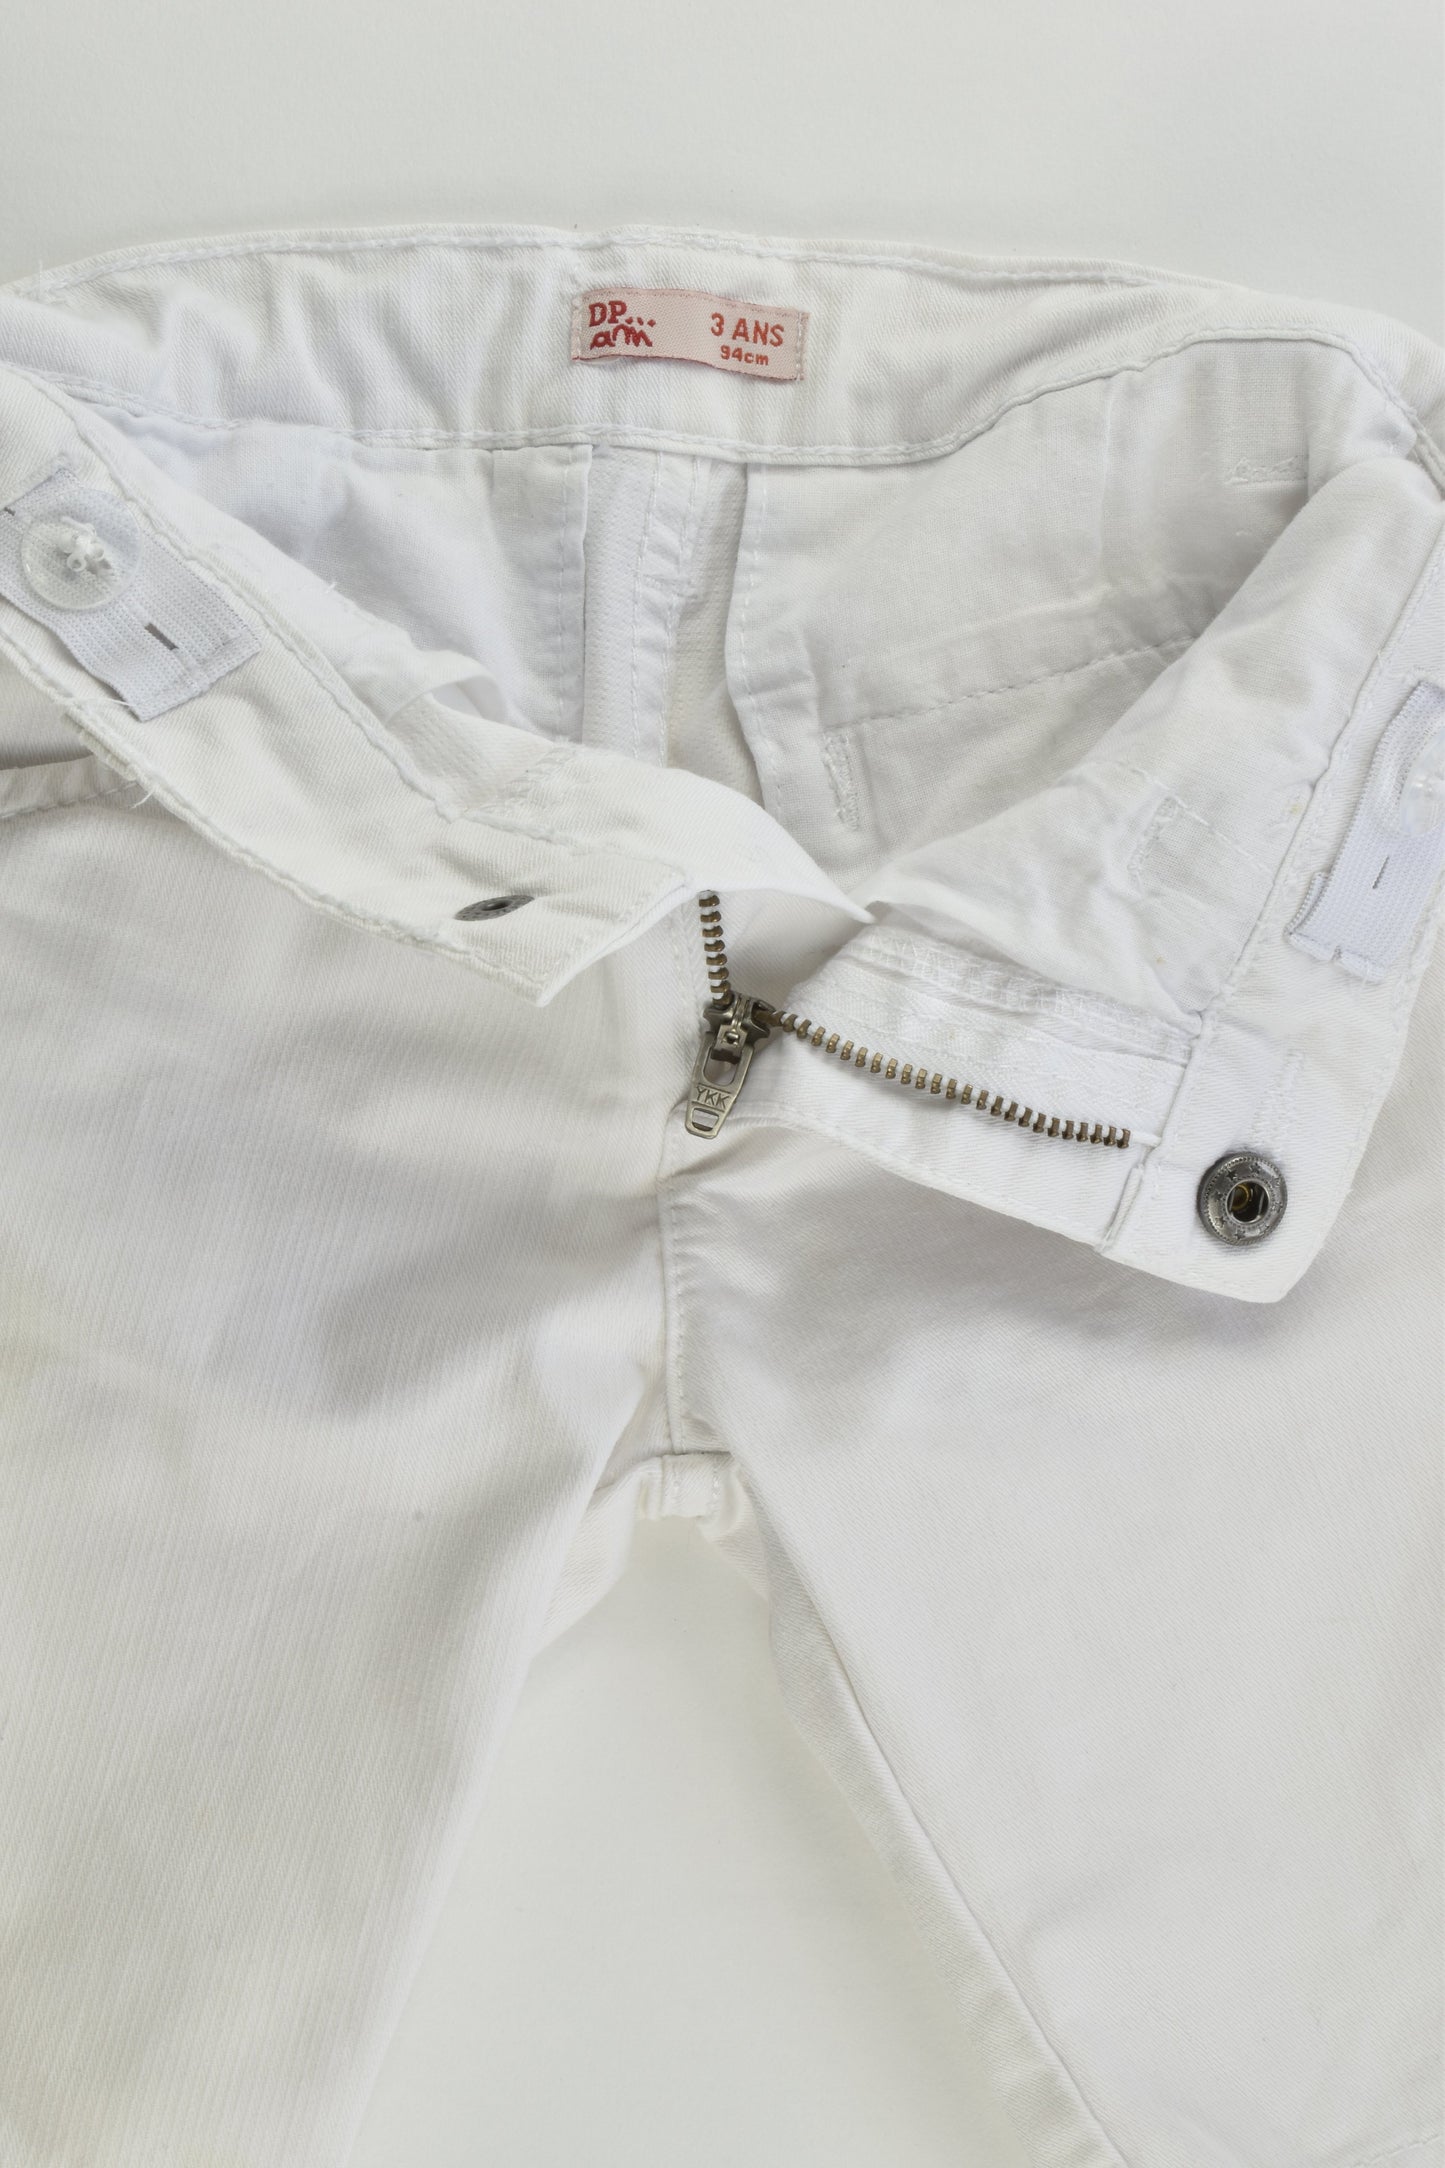 Du Pareil au Même (France) Size 2-3 (94 cm) White Shorts